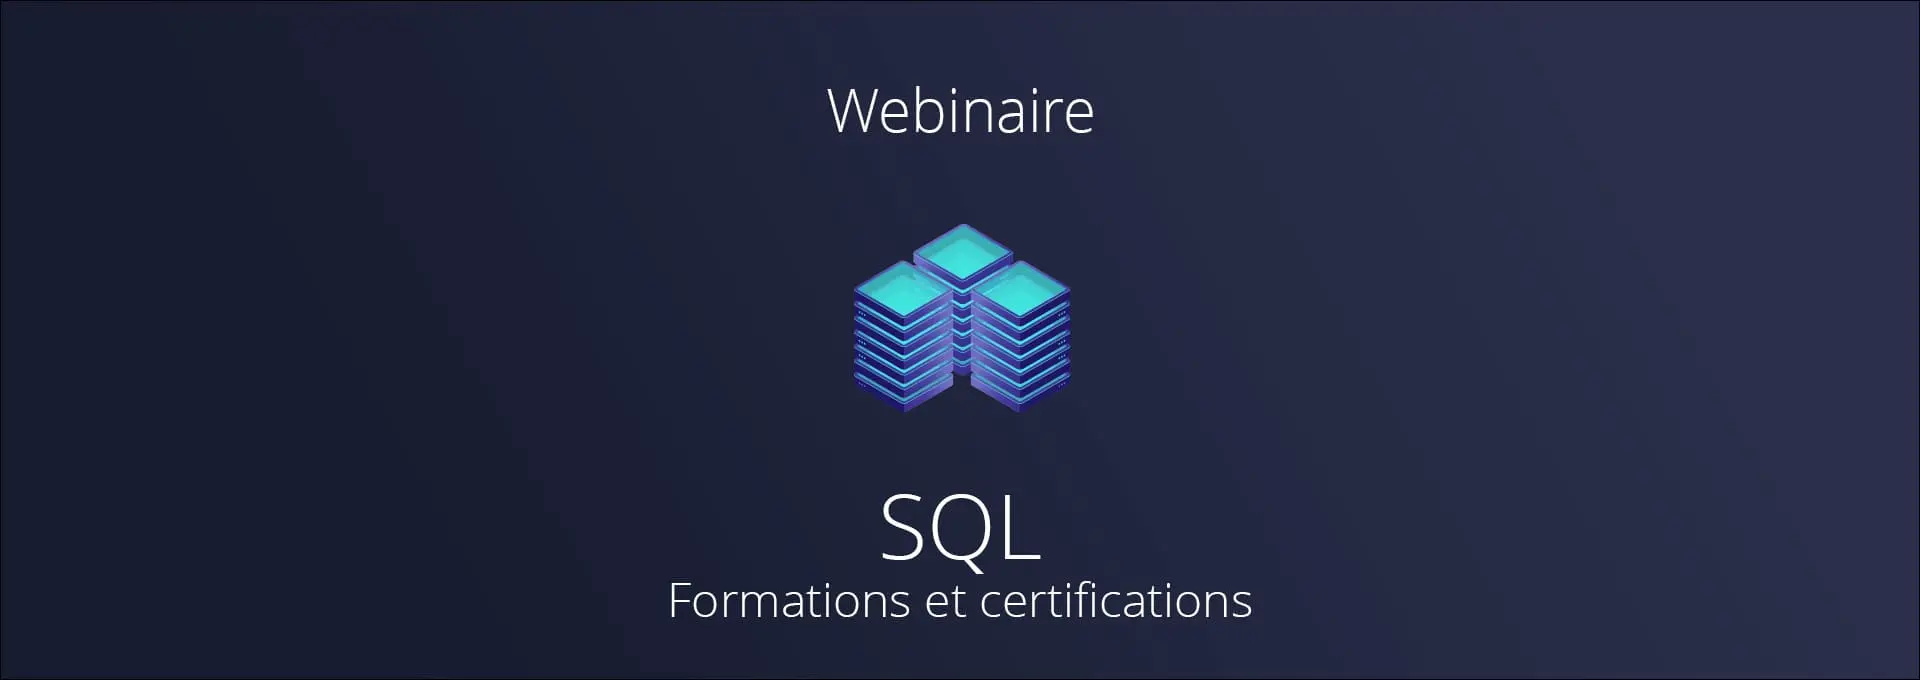 Actualités Webinaires - Formations et certifications SQL